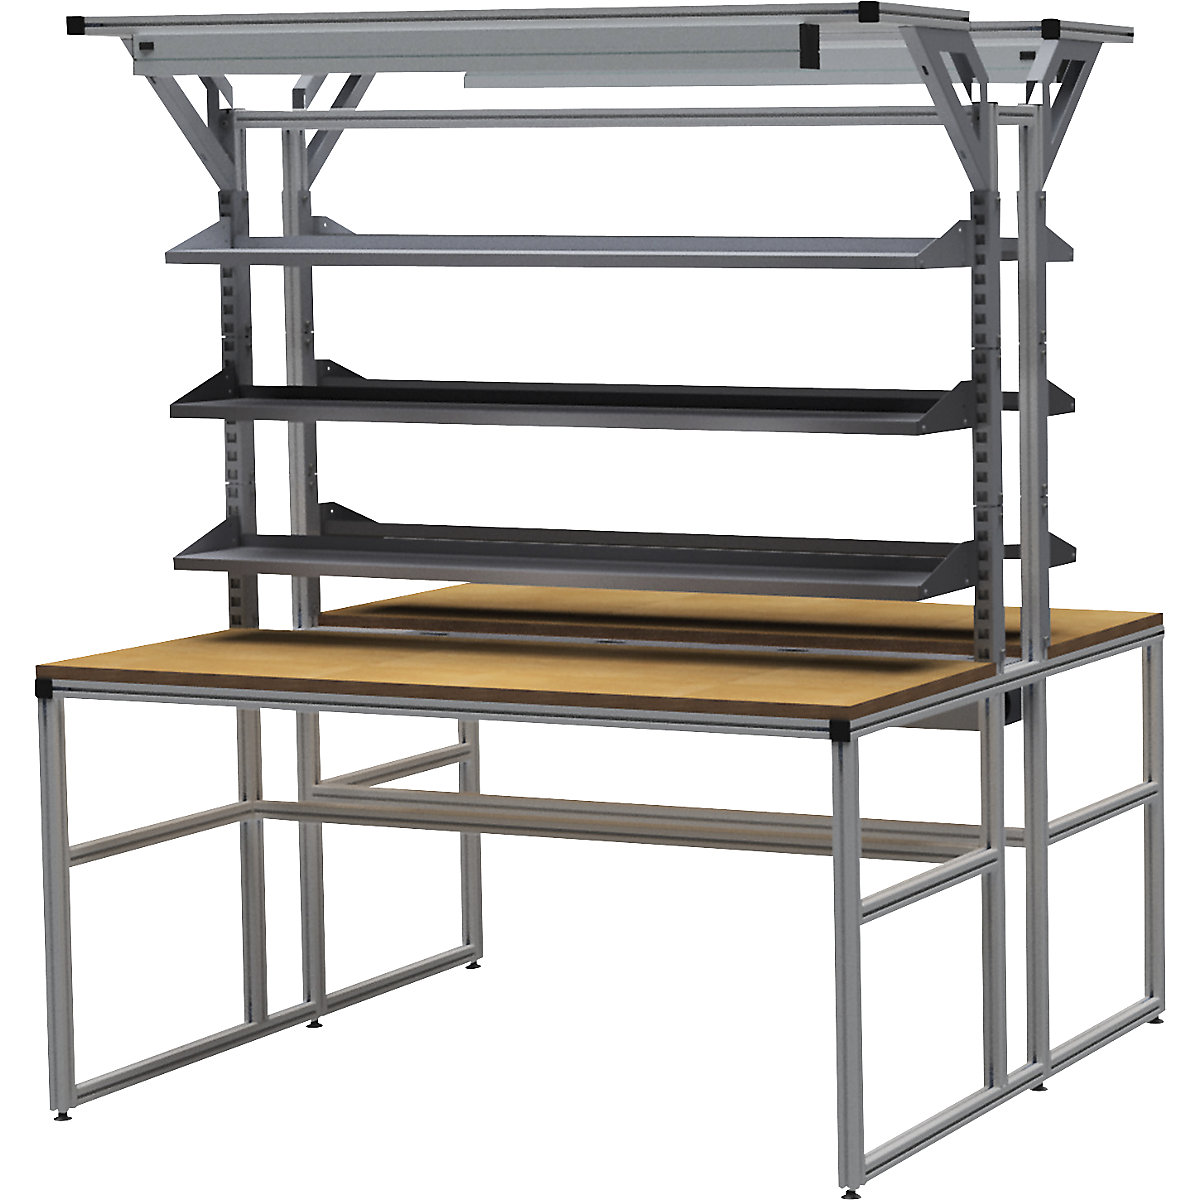 Stół warsztatowy aluminiowy workalu® z modułem systemowym, dwustronny – bedrunka hirth